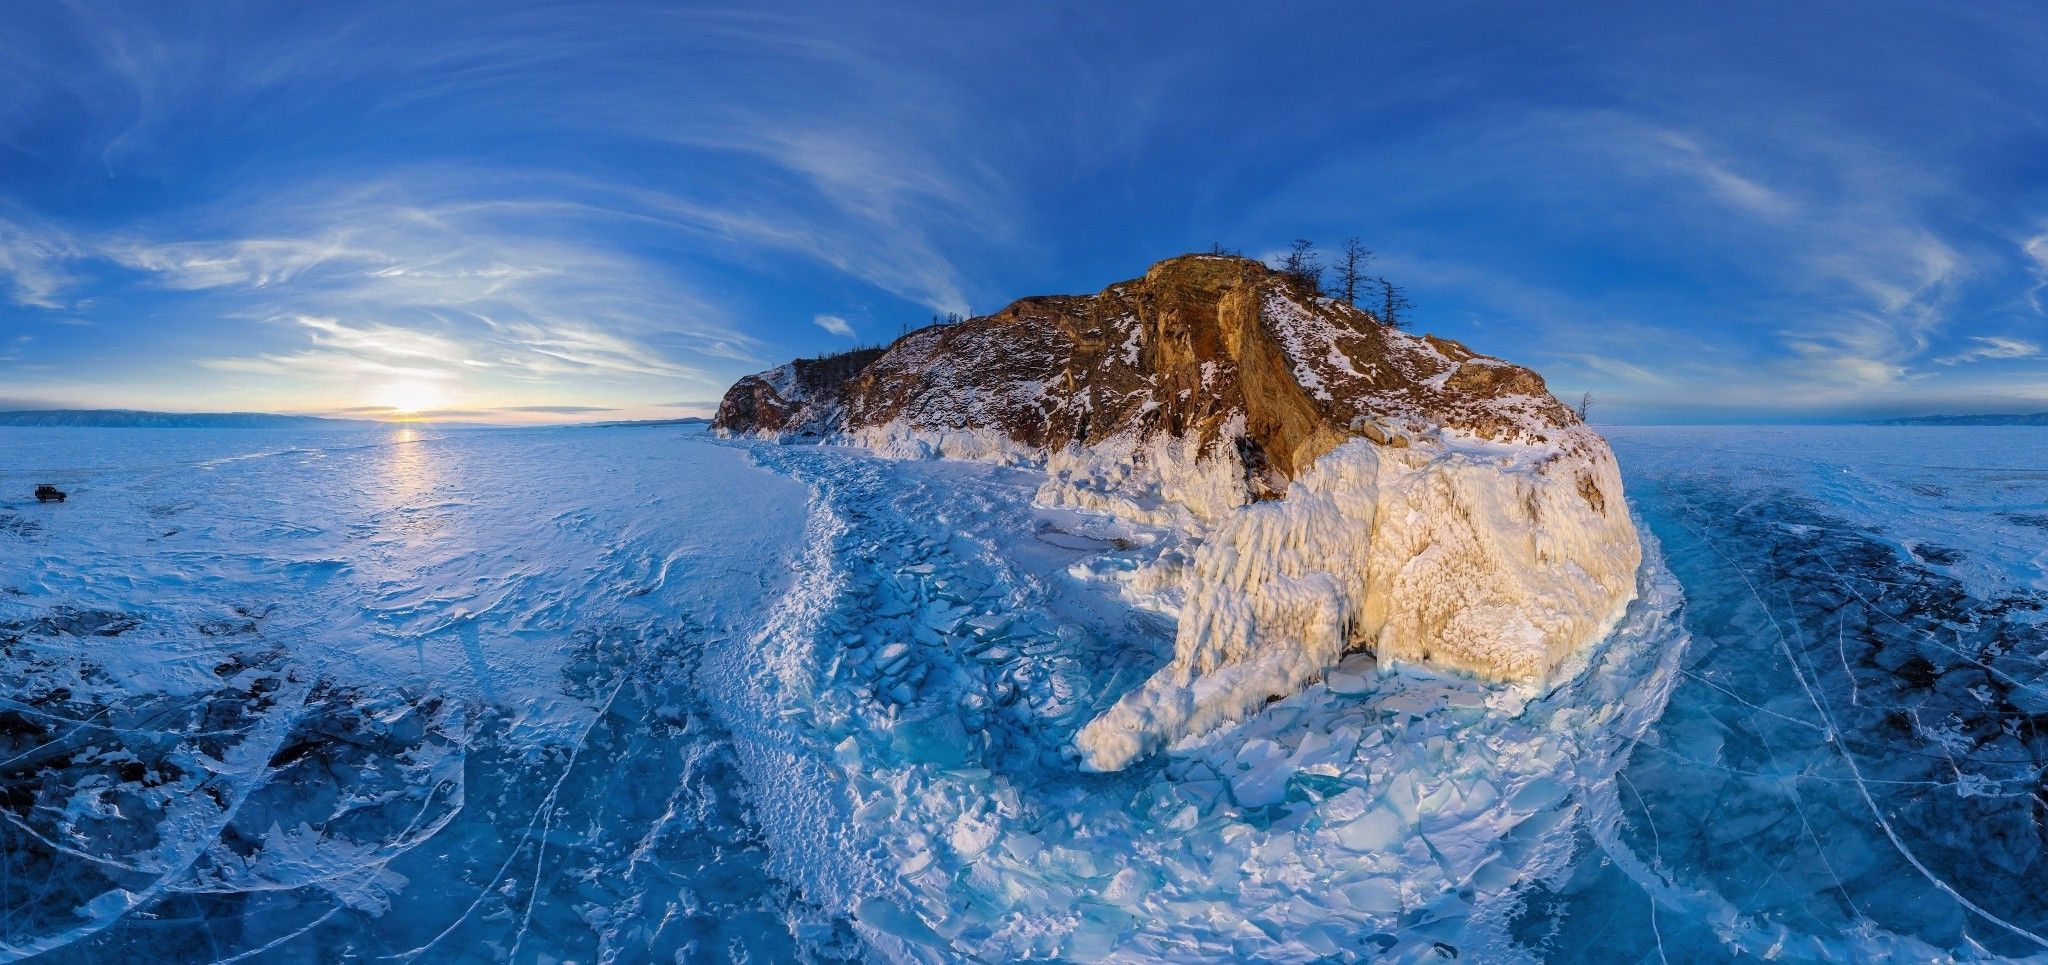 Lake Baikal, Winter, Ice, Frost, Lake, Clouds, Island, Sunset